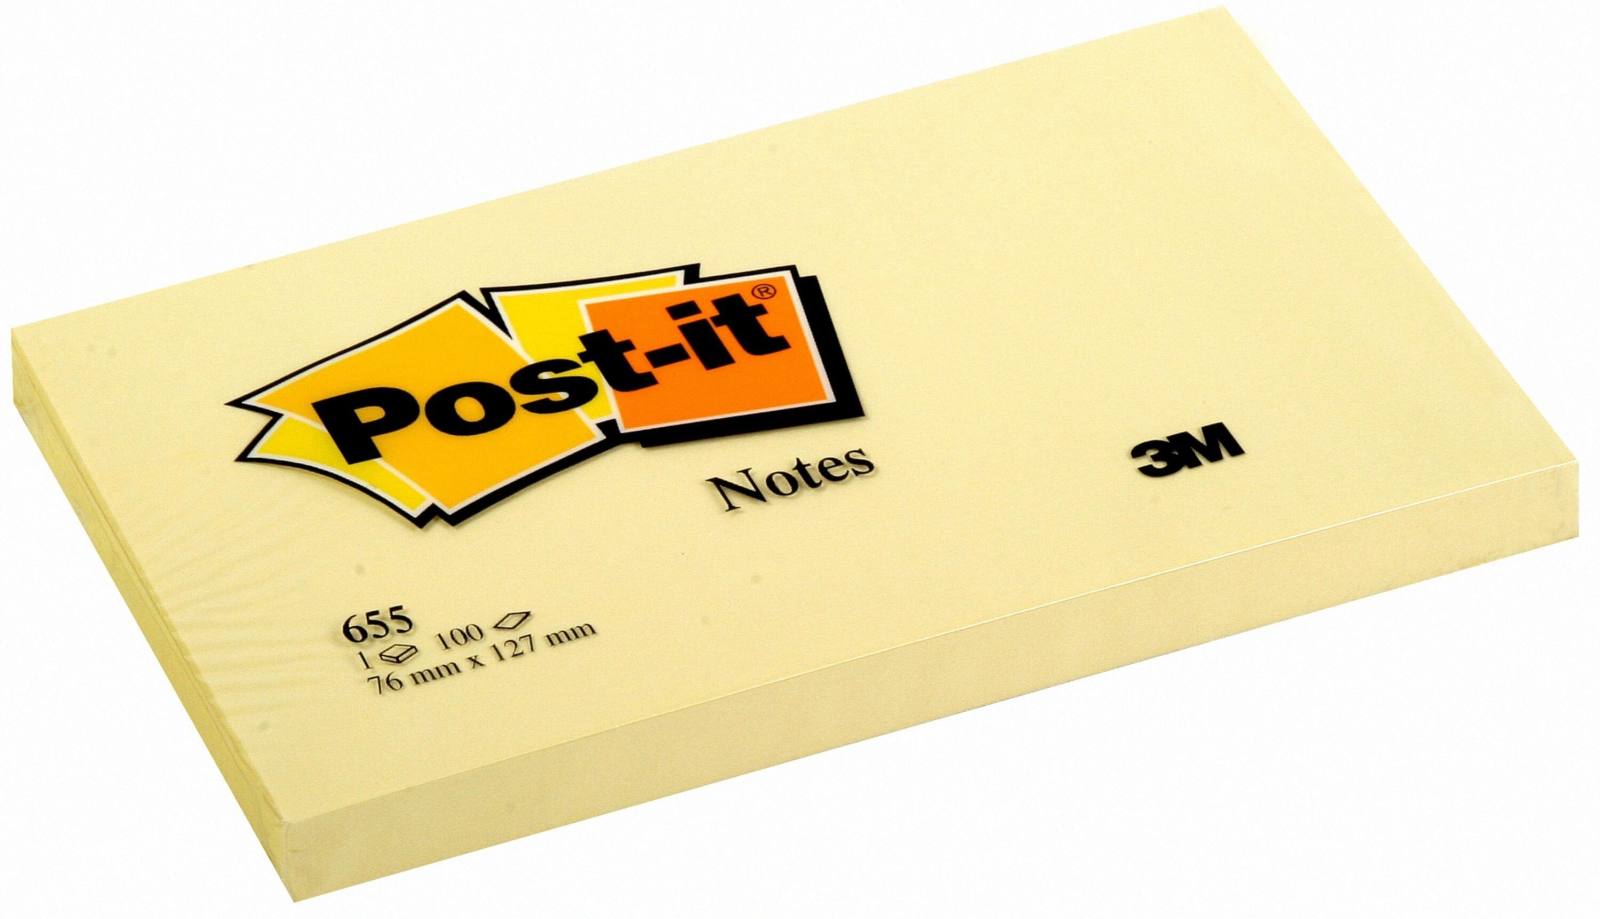 3M Post-it Notes 655, 127 mm x 76 mm, gelb, 1Pack = 12x 1 Block à 100 Blatt